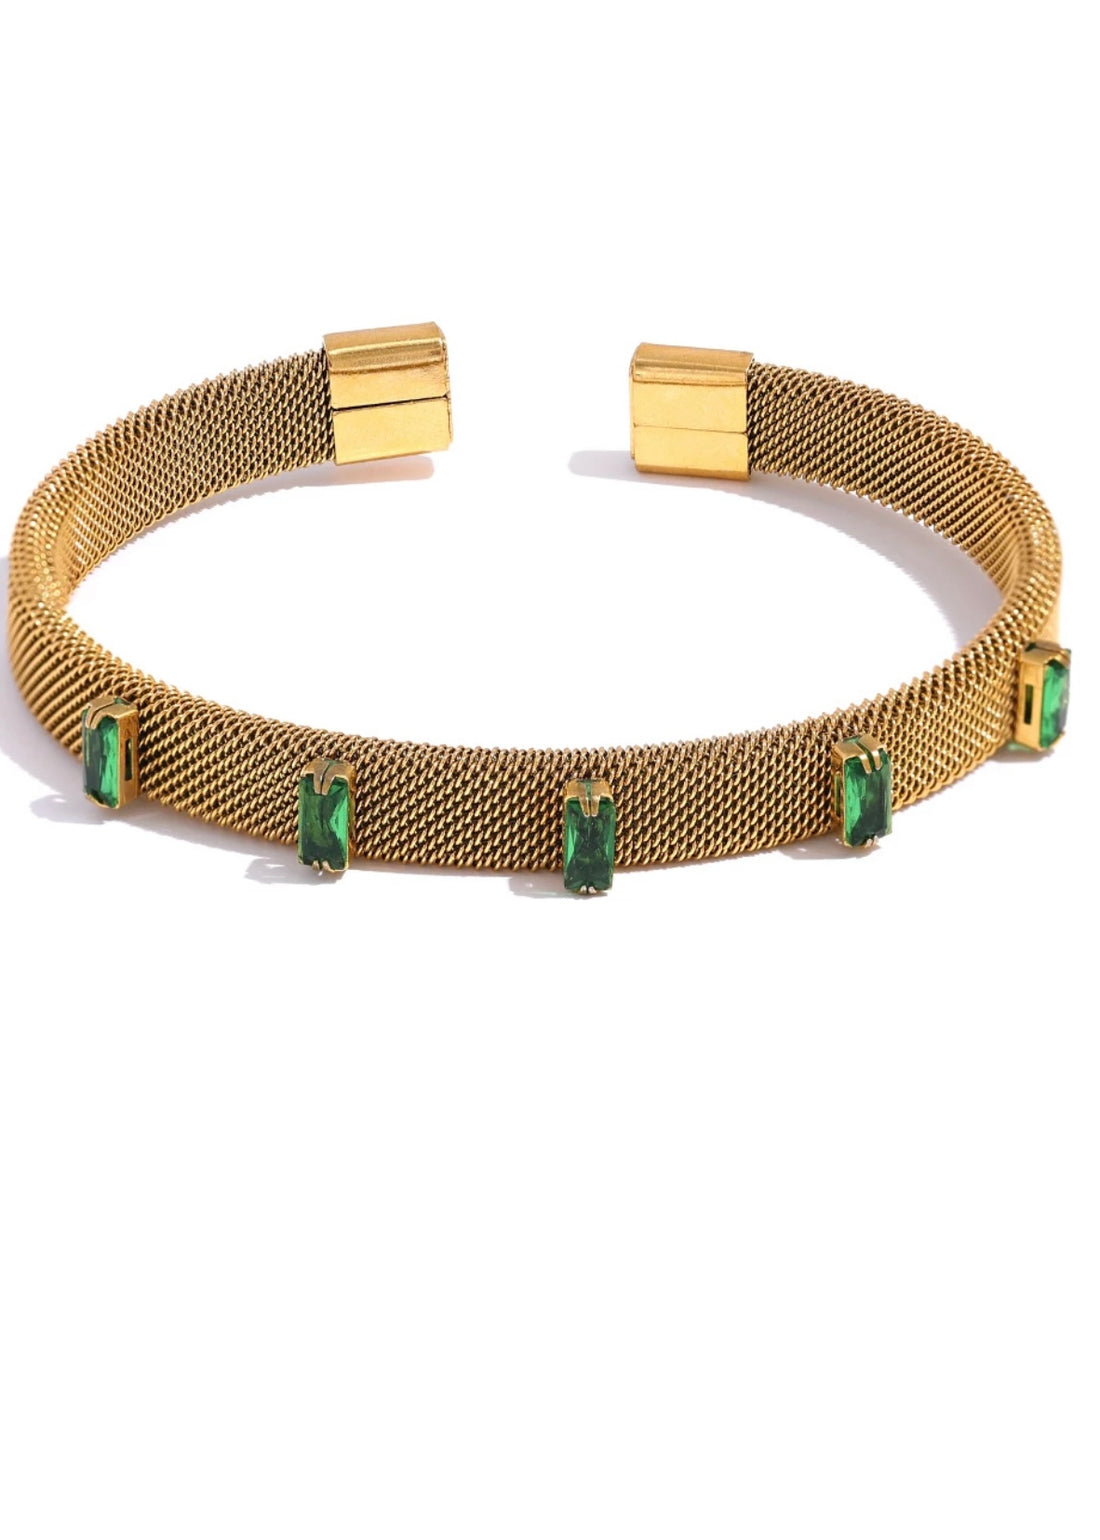 The Sophie Emerald Bracelet